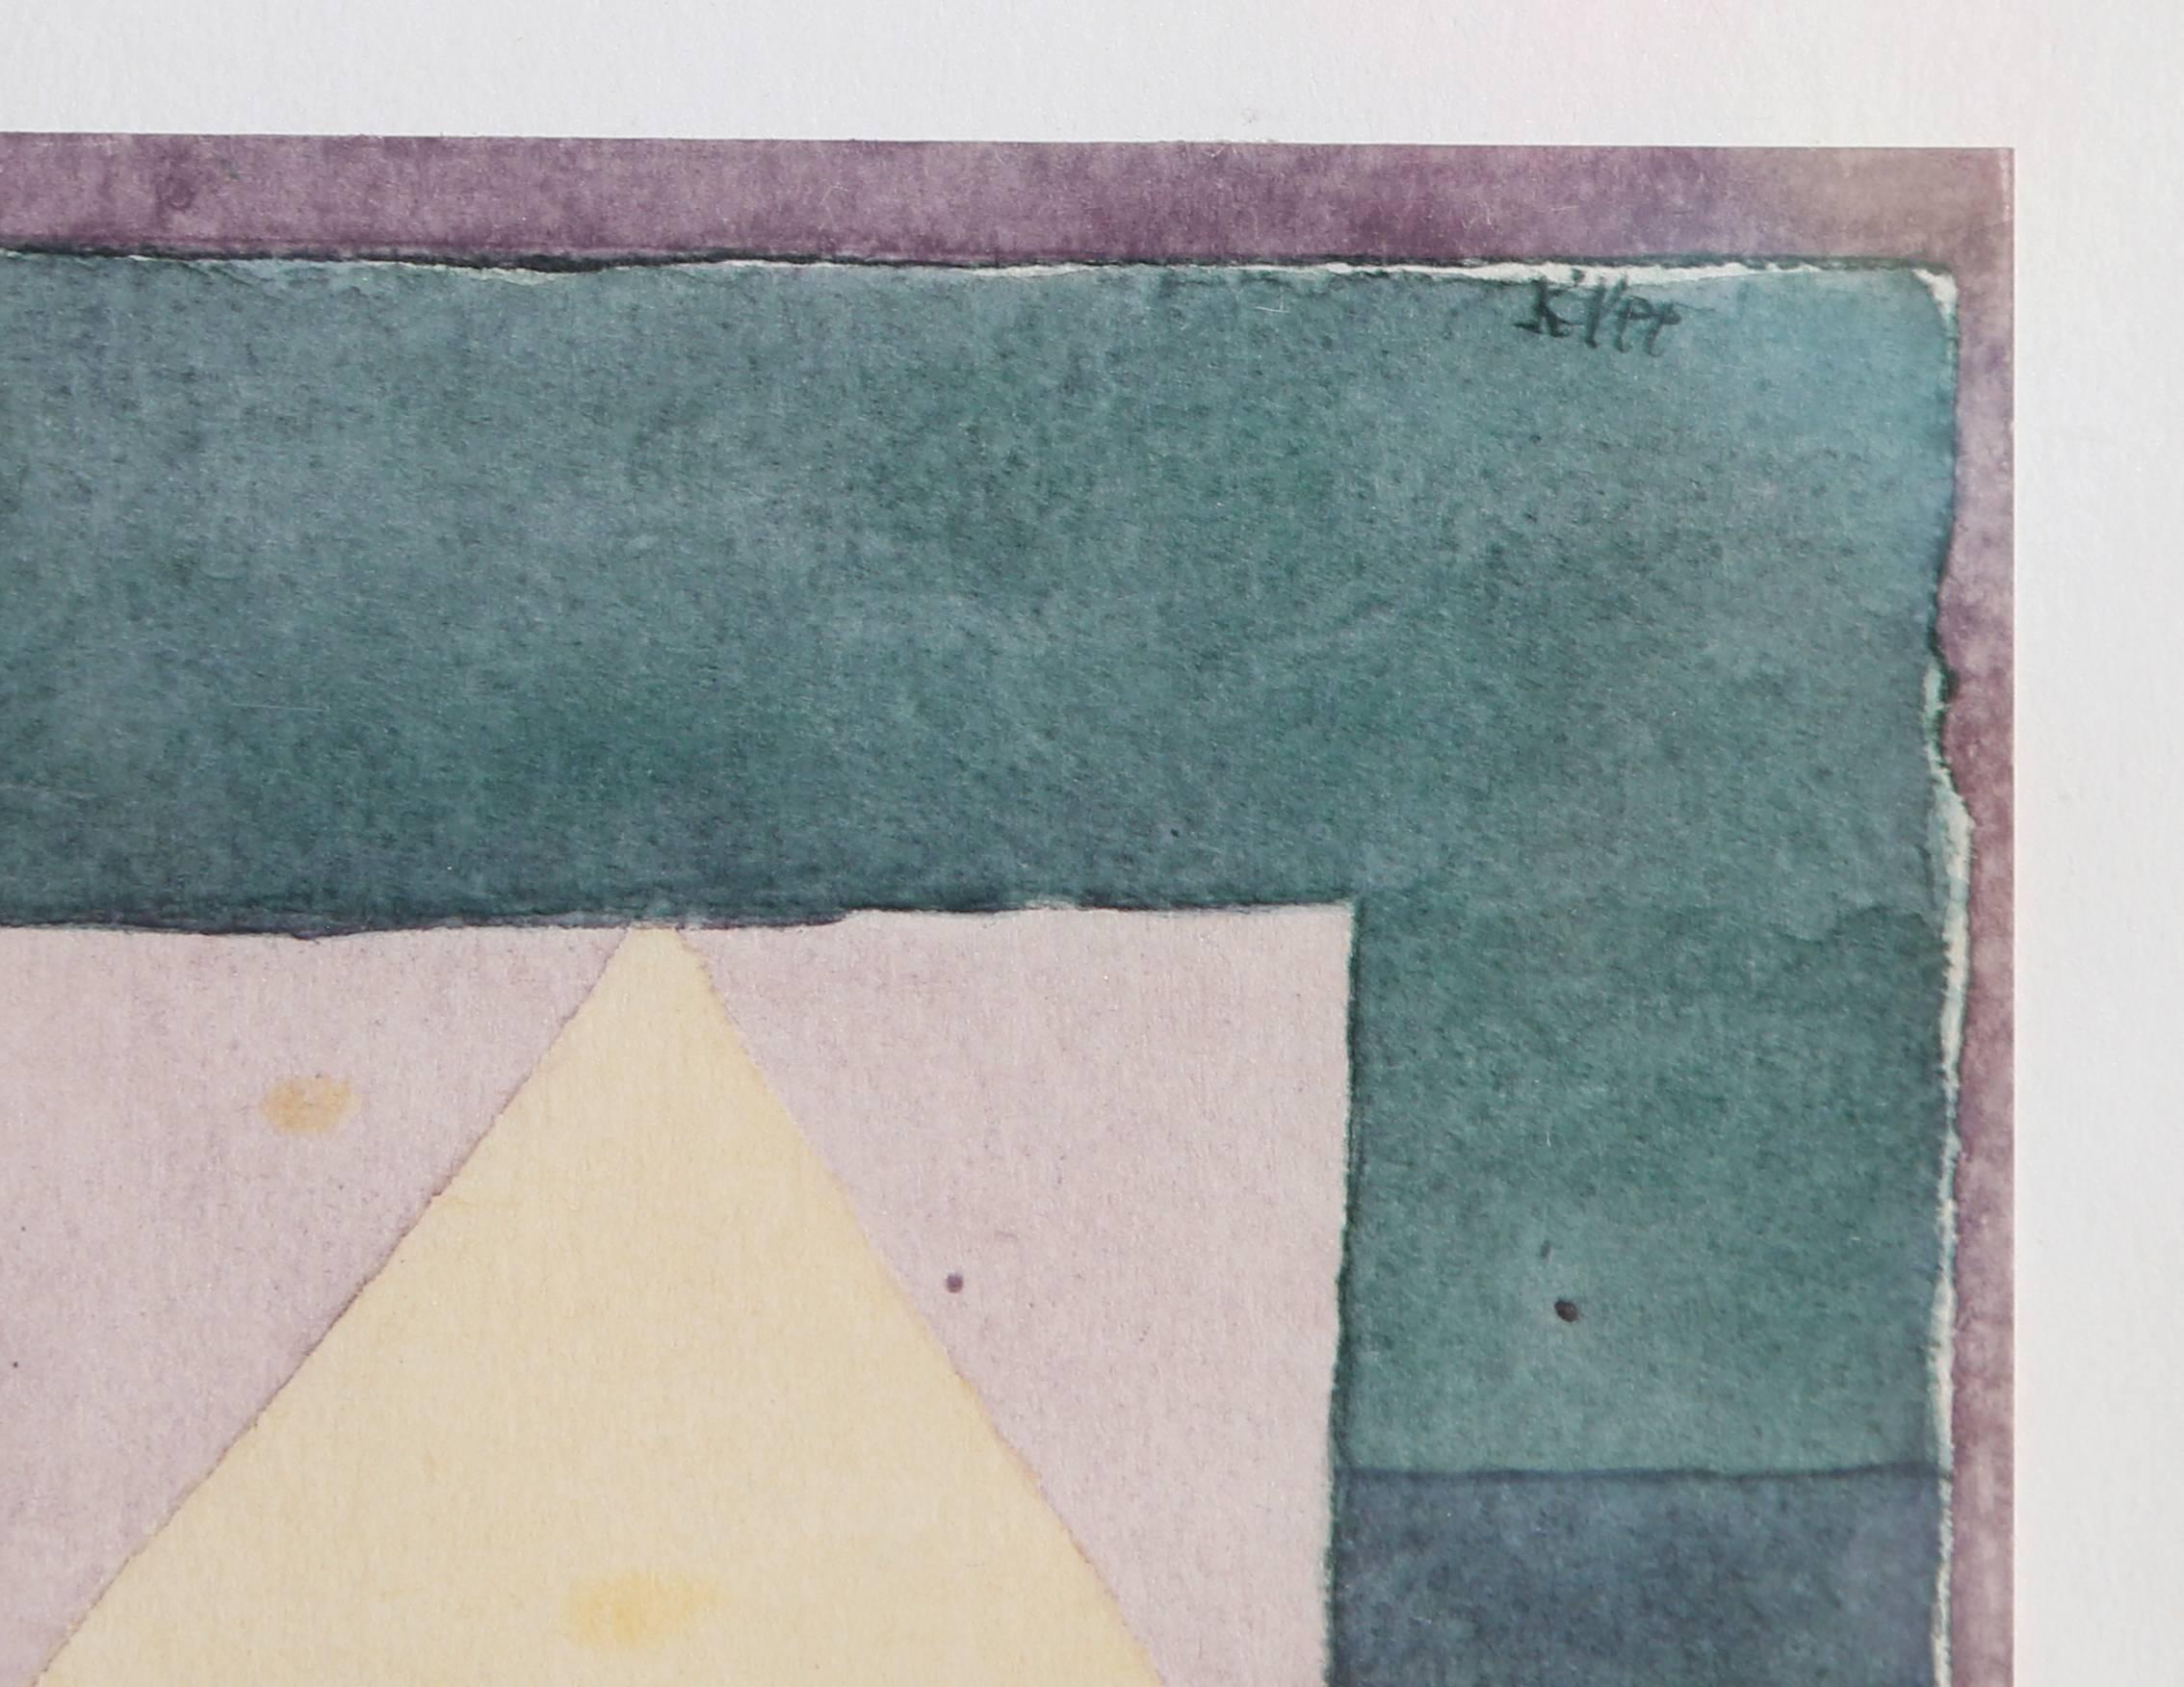 Drei Hauser Grun-violette Stufung (Troi Maisons Gradation vert-violet) - Print by (after) Paul Klee